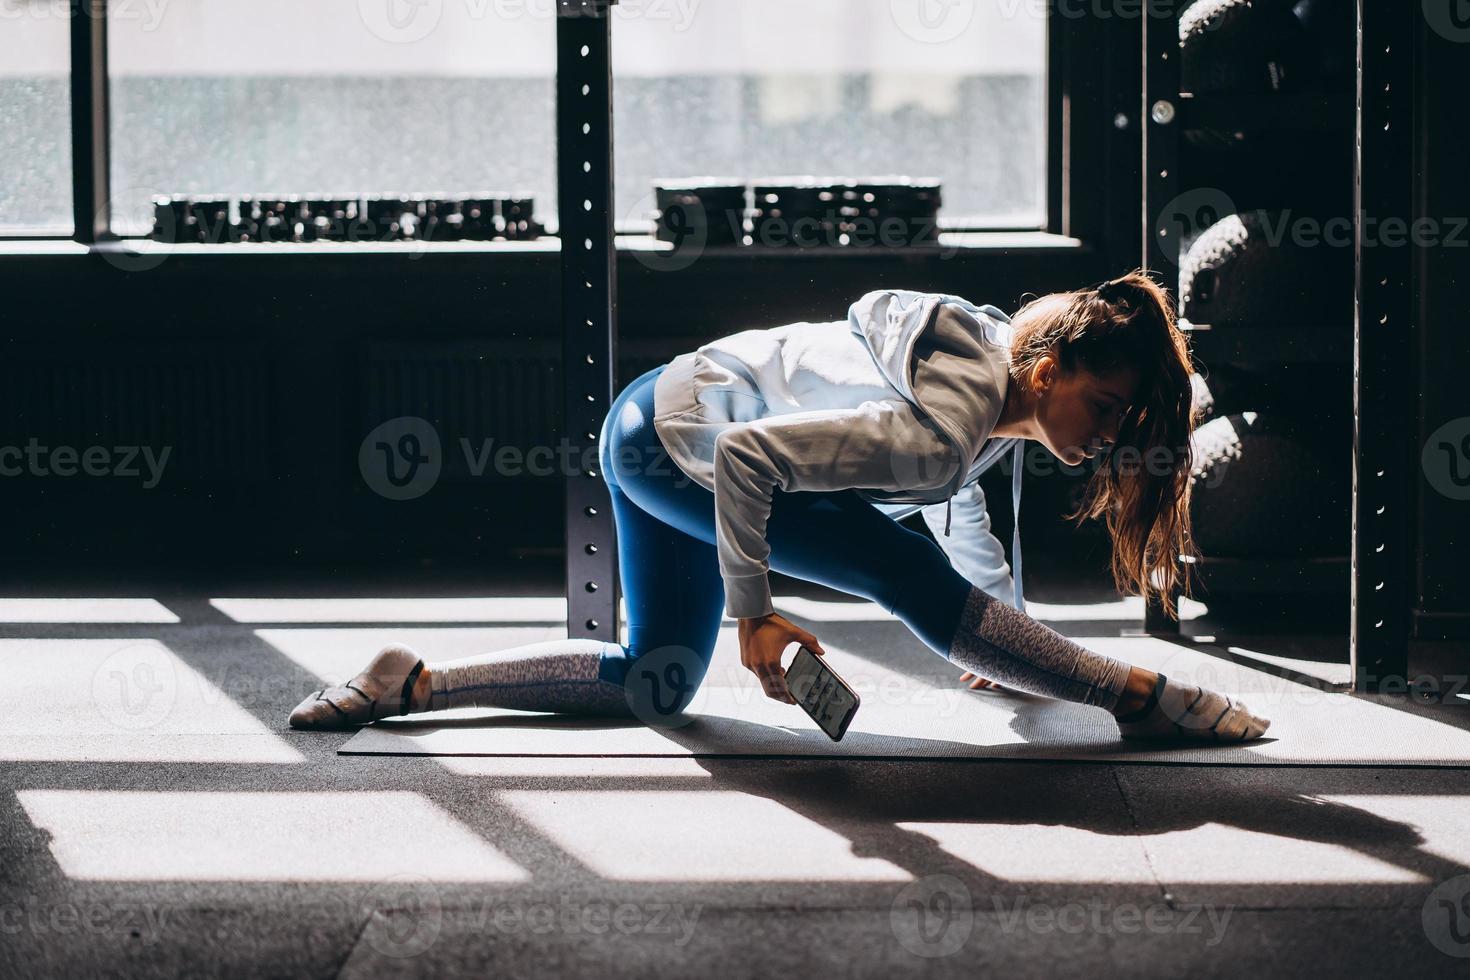 ritratto di attraente giovane donna fare yoga o pilates esercizio foto